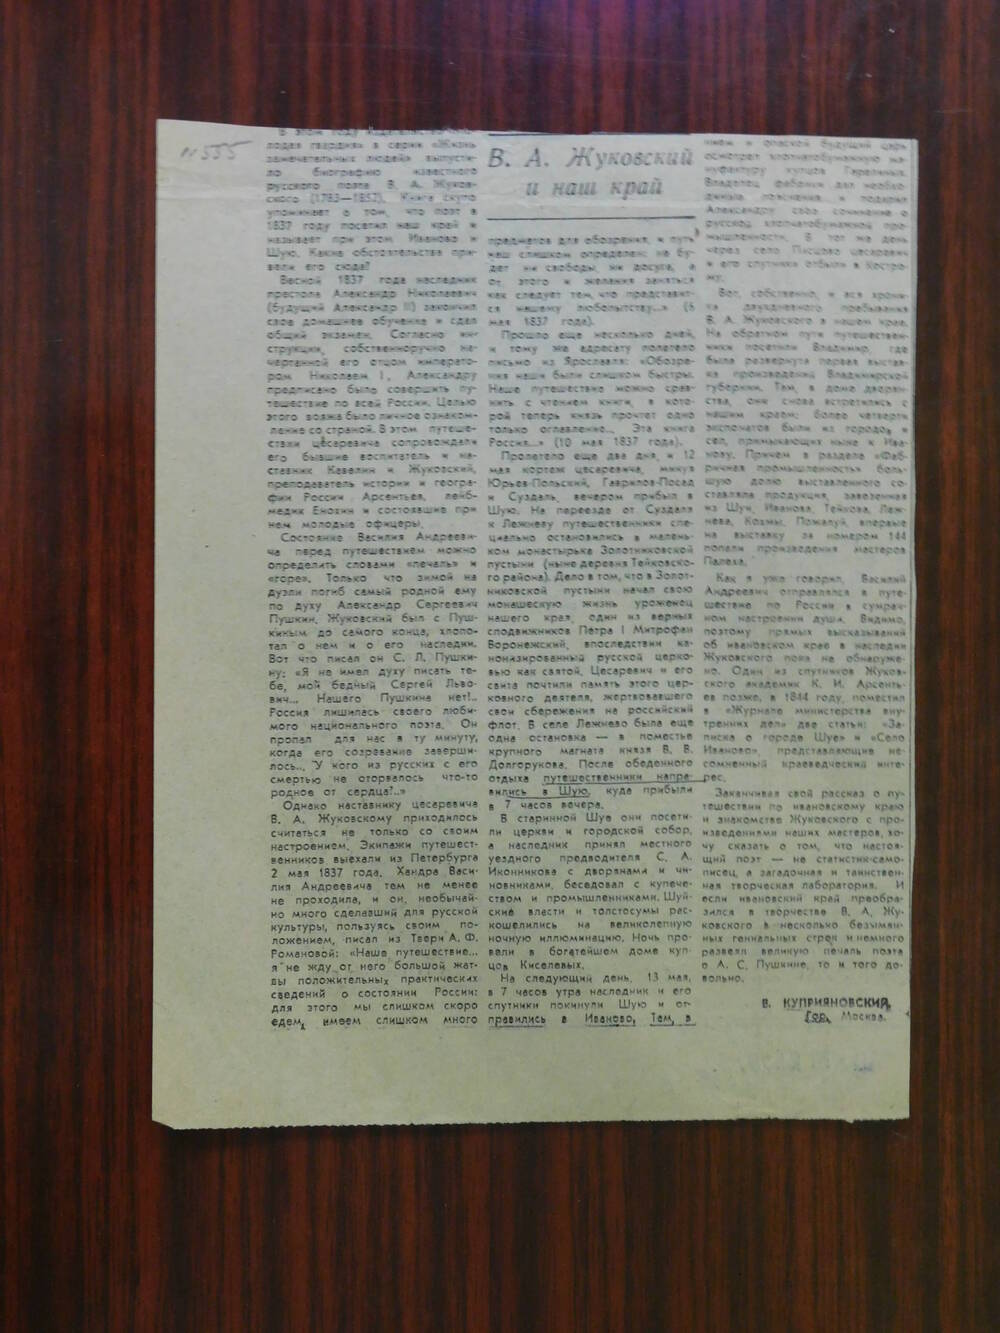 Фрагмент газеты Знамя коммунизма № 134 от 23.08.1986 г. Ст. В. Куприяновский Обозрения... были слишком быстрыми. Шуя.